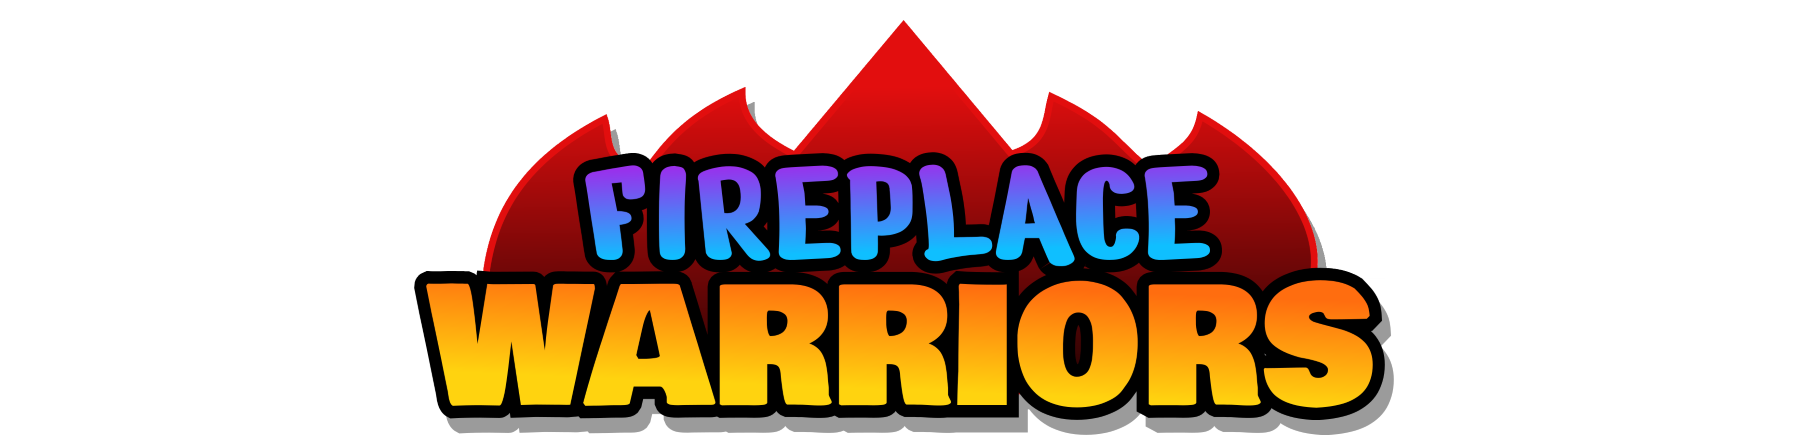 Fireplace Warriors